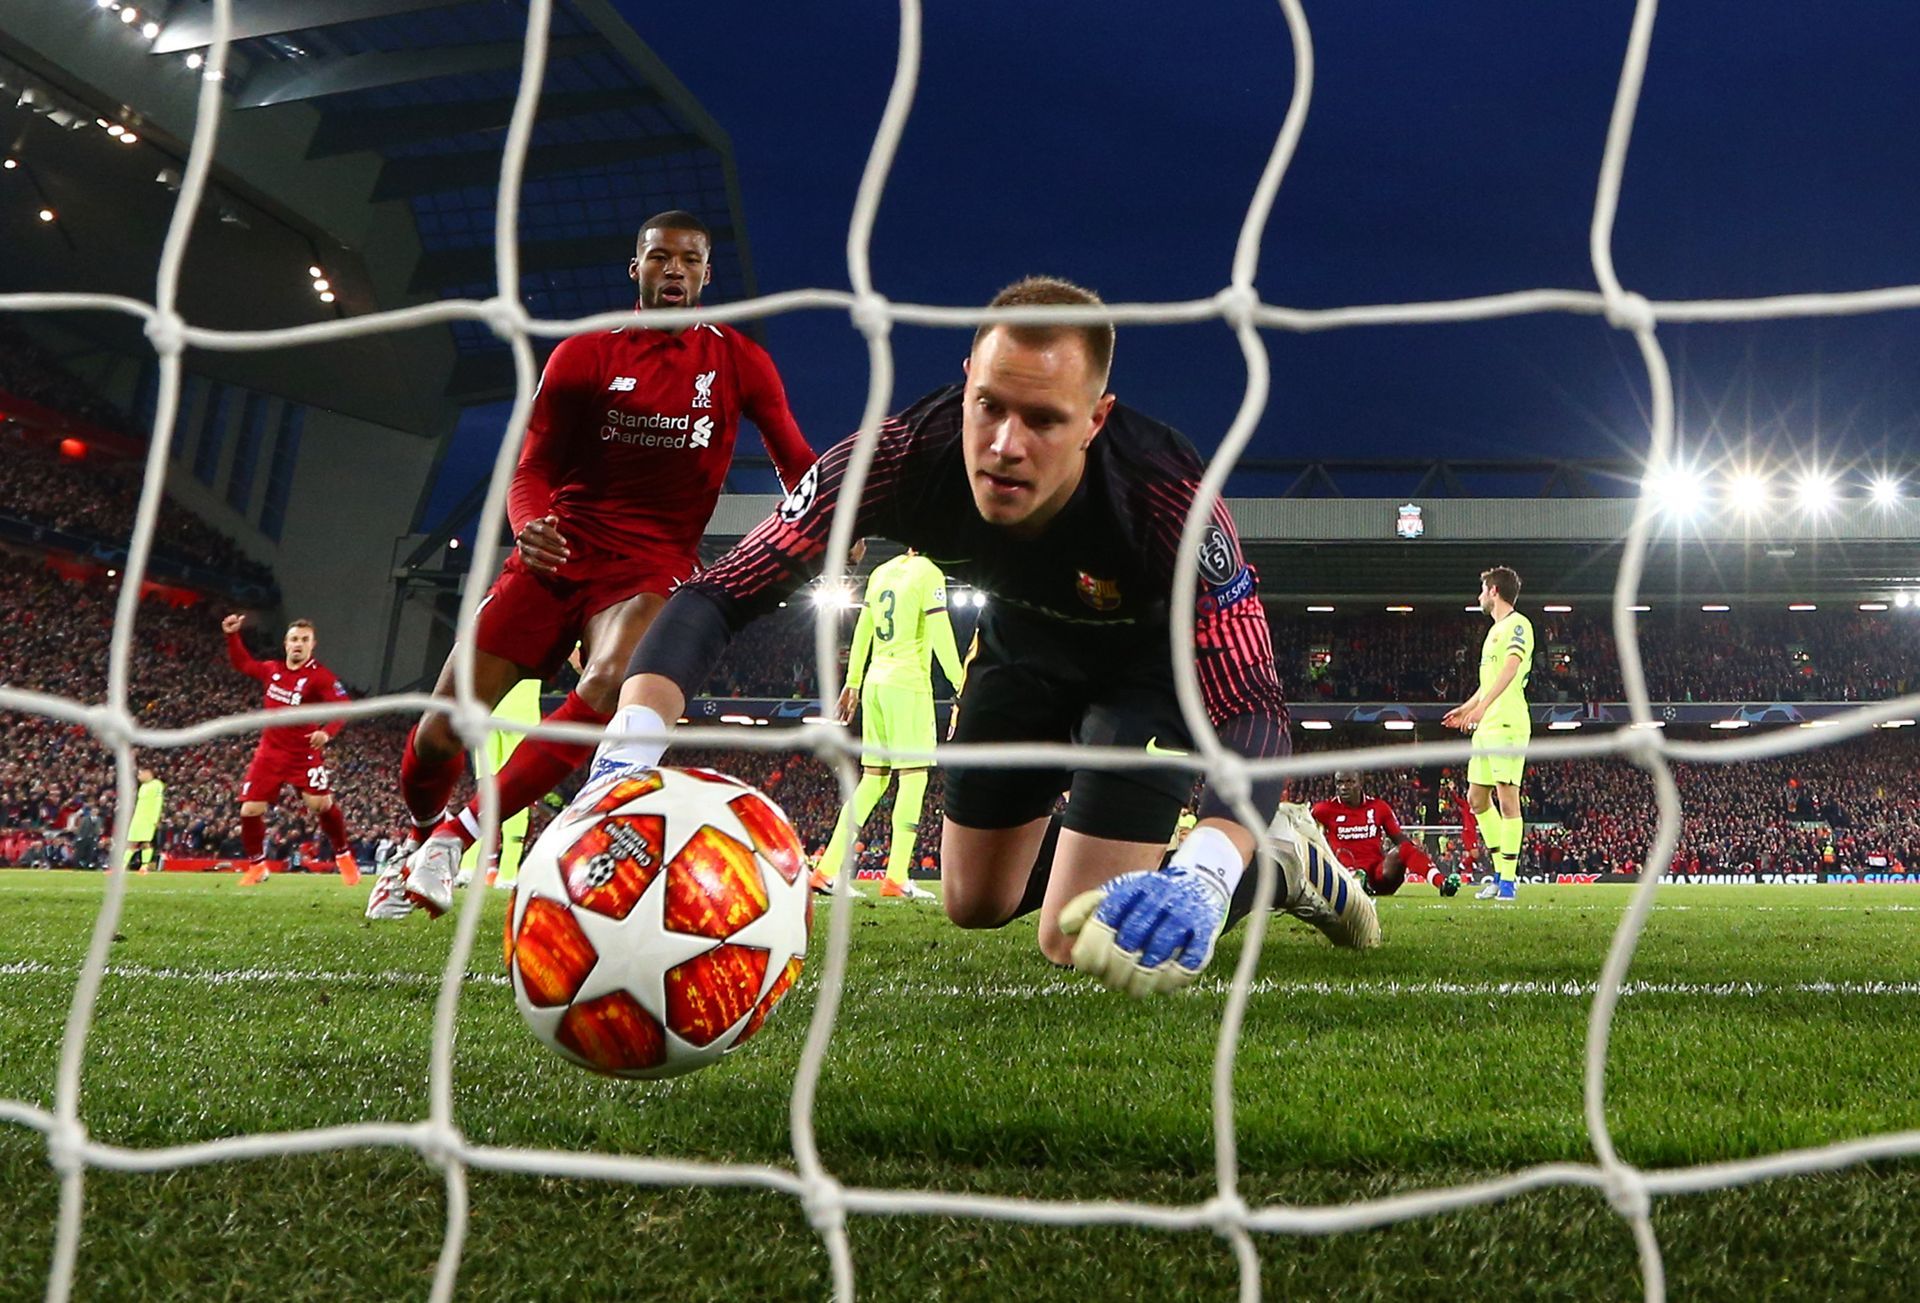 Най-великият мач в ерата "Клоп" - 4:0 срещу Барселона в реванша от полуфиналите през 2019-а. След 0:3 навън, Ливърпул обърна по невероятен сценарий и стигна втори пореден финал